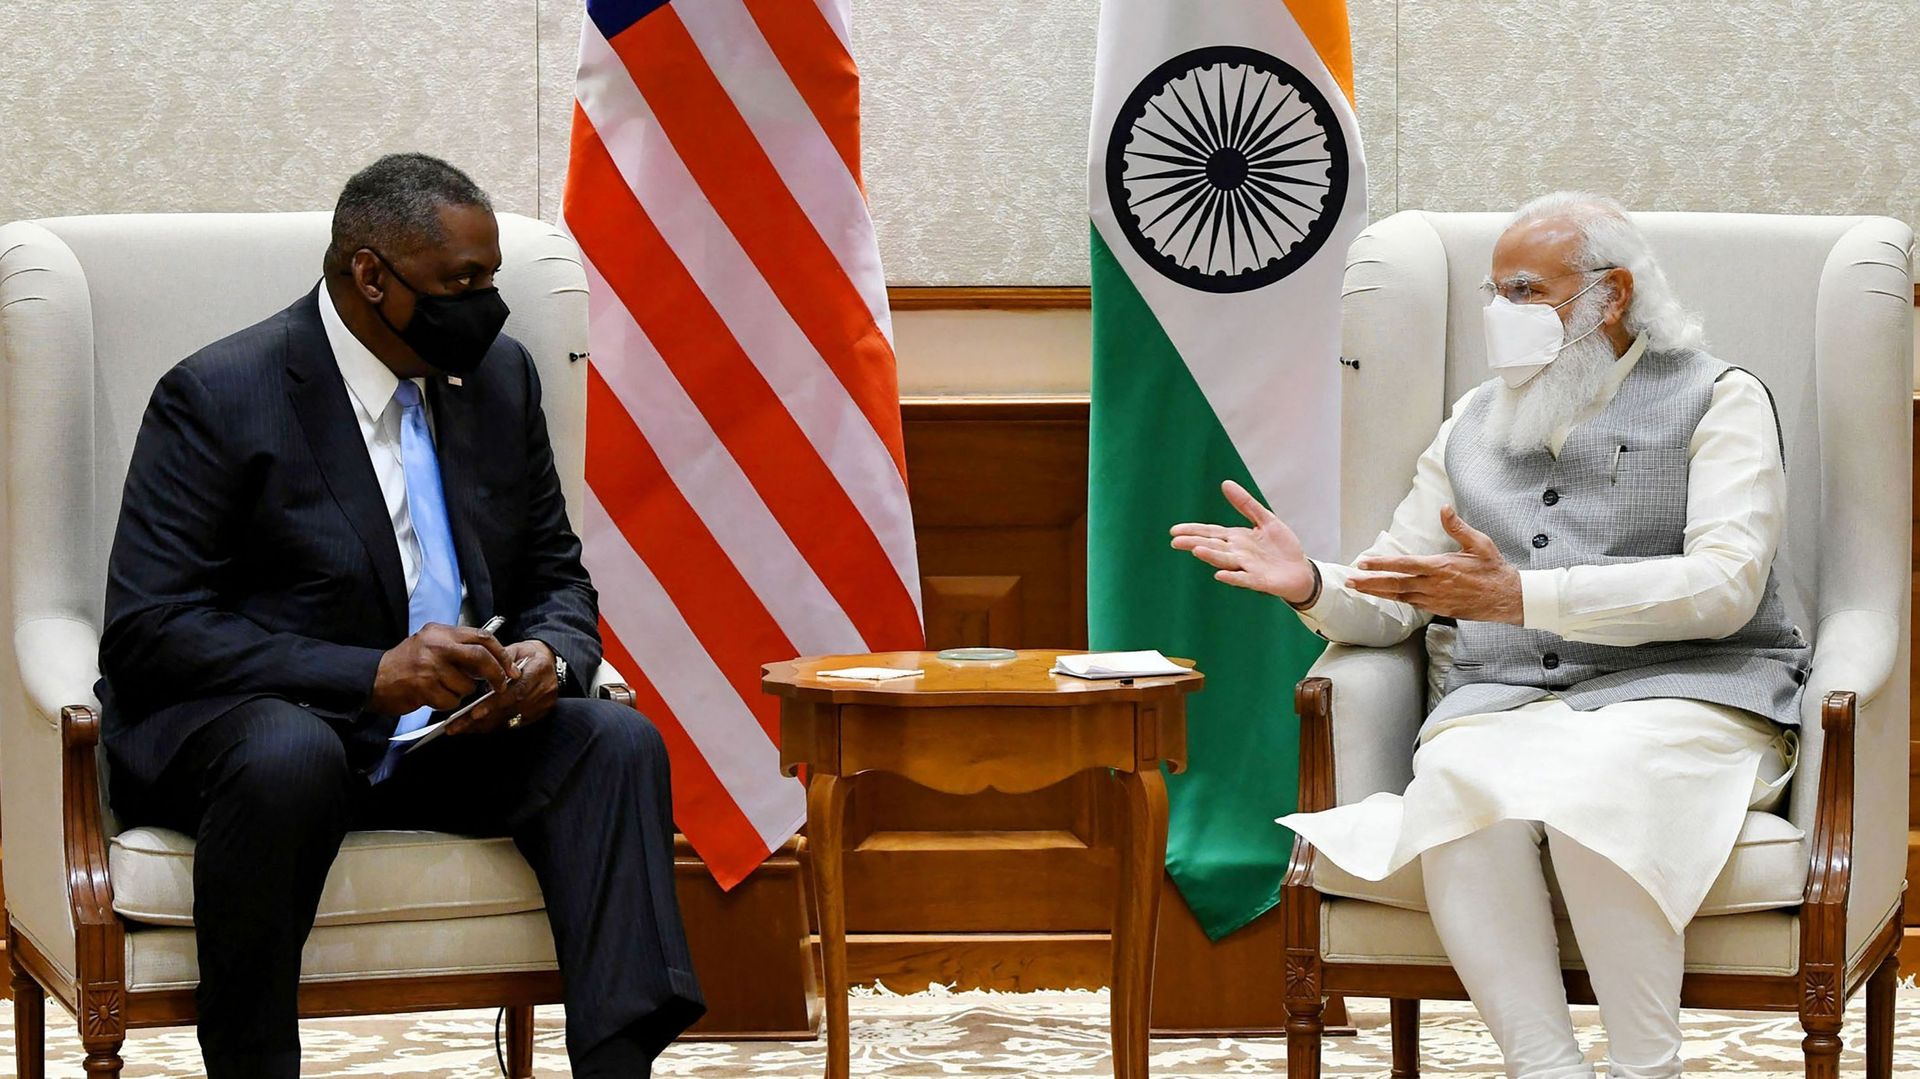 Inde et Etats-Unis se disent sur "la même longueur d'onde", selon le chef du Pentagone